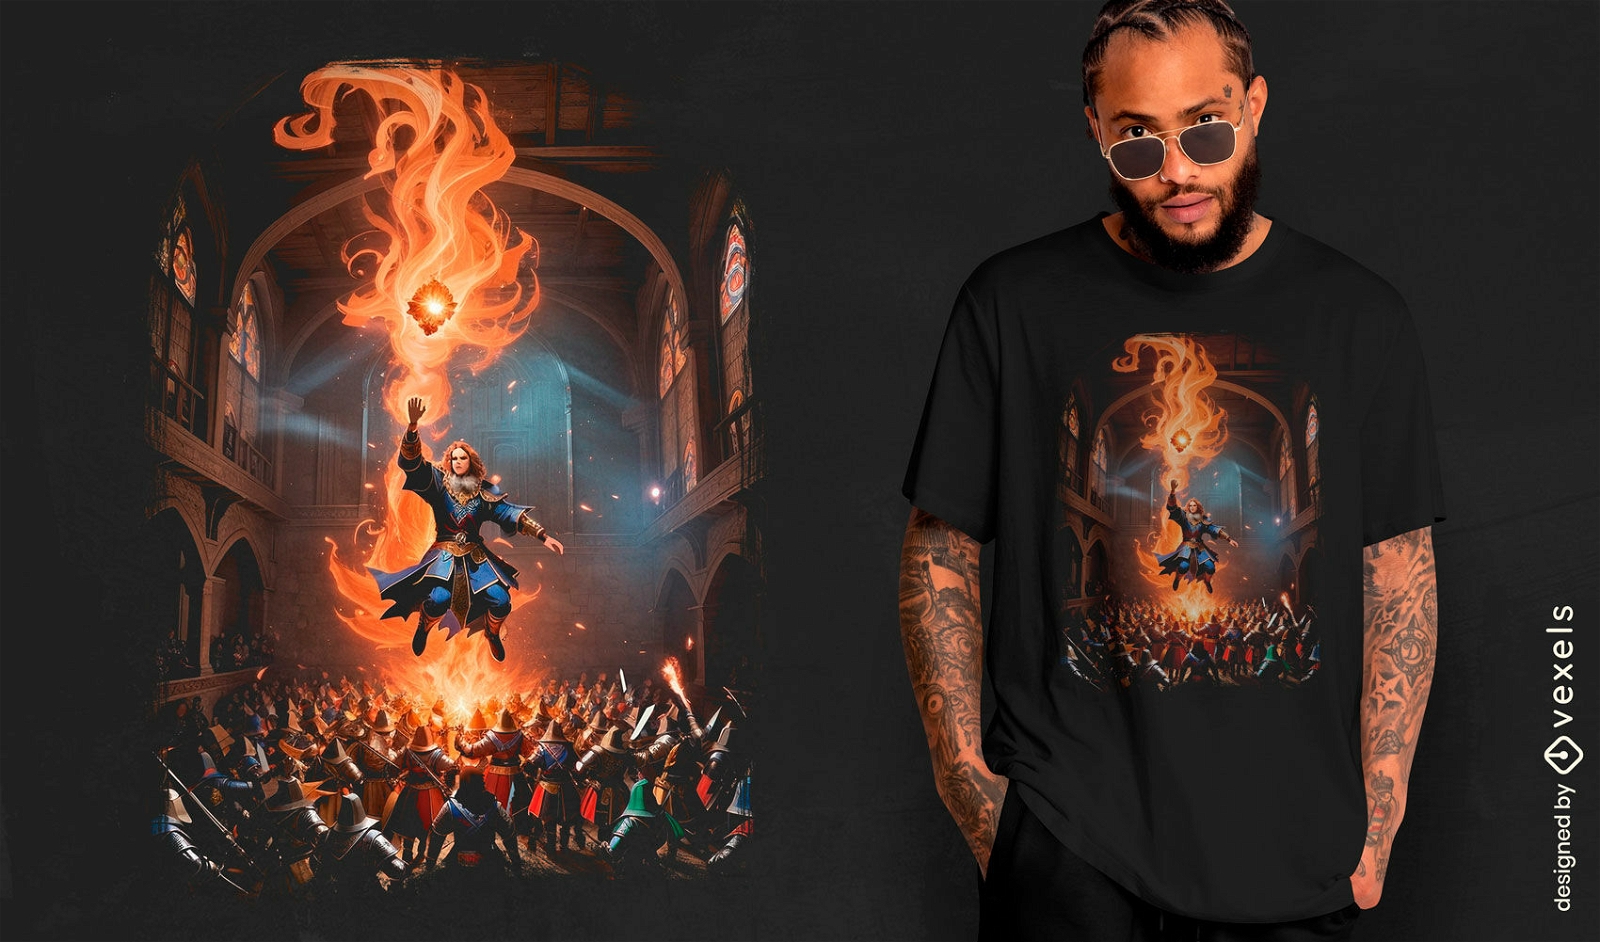 Fiery sorcerer battle t-shirt design